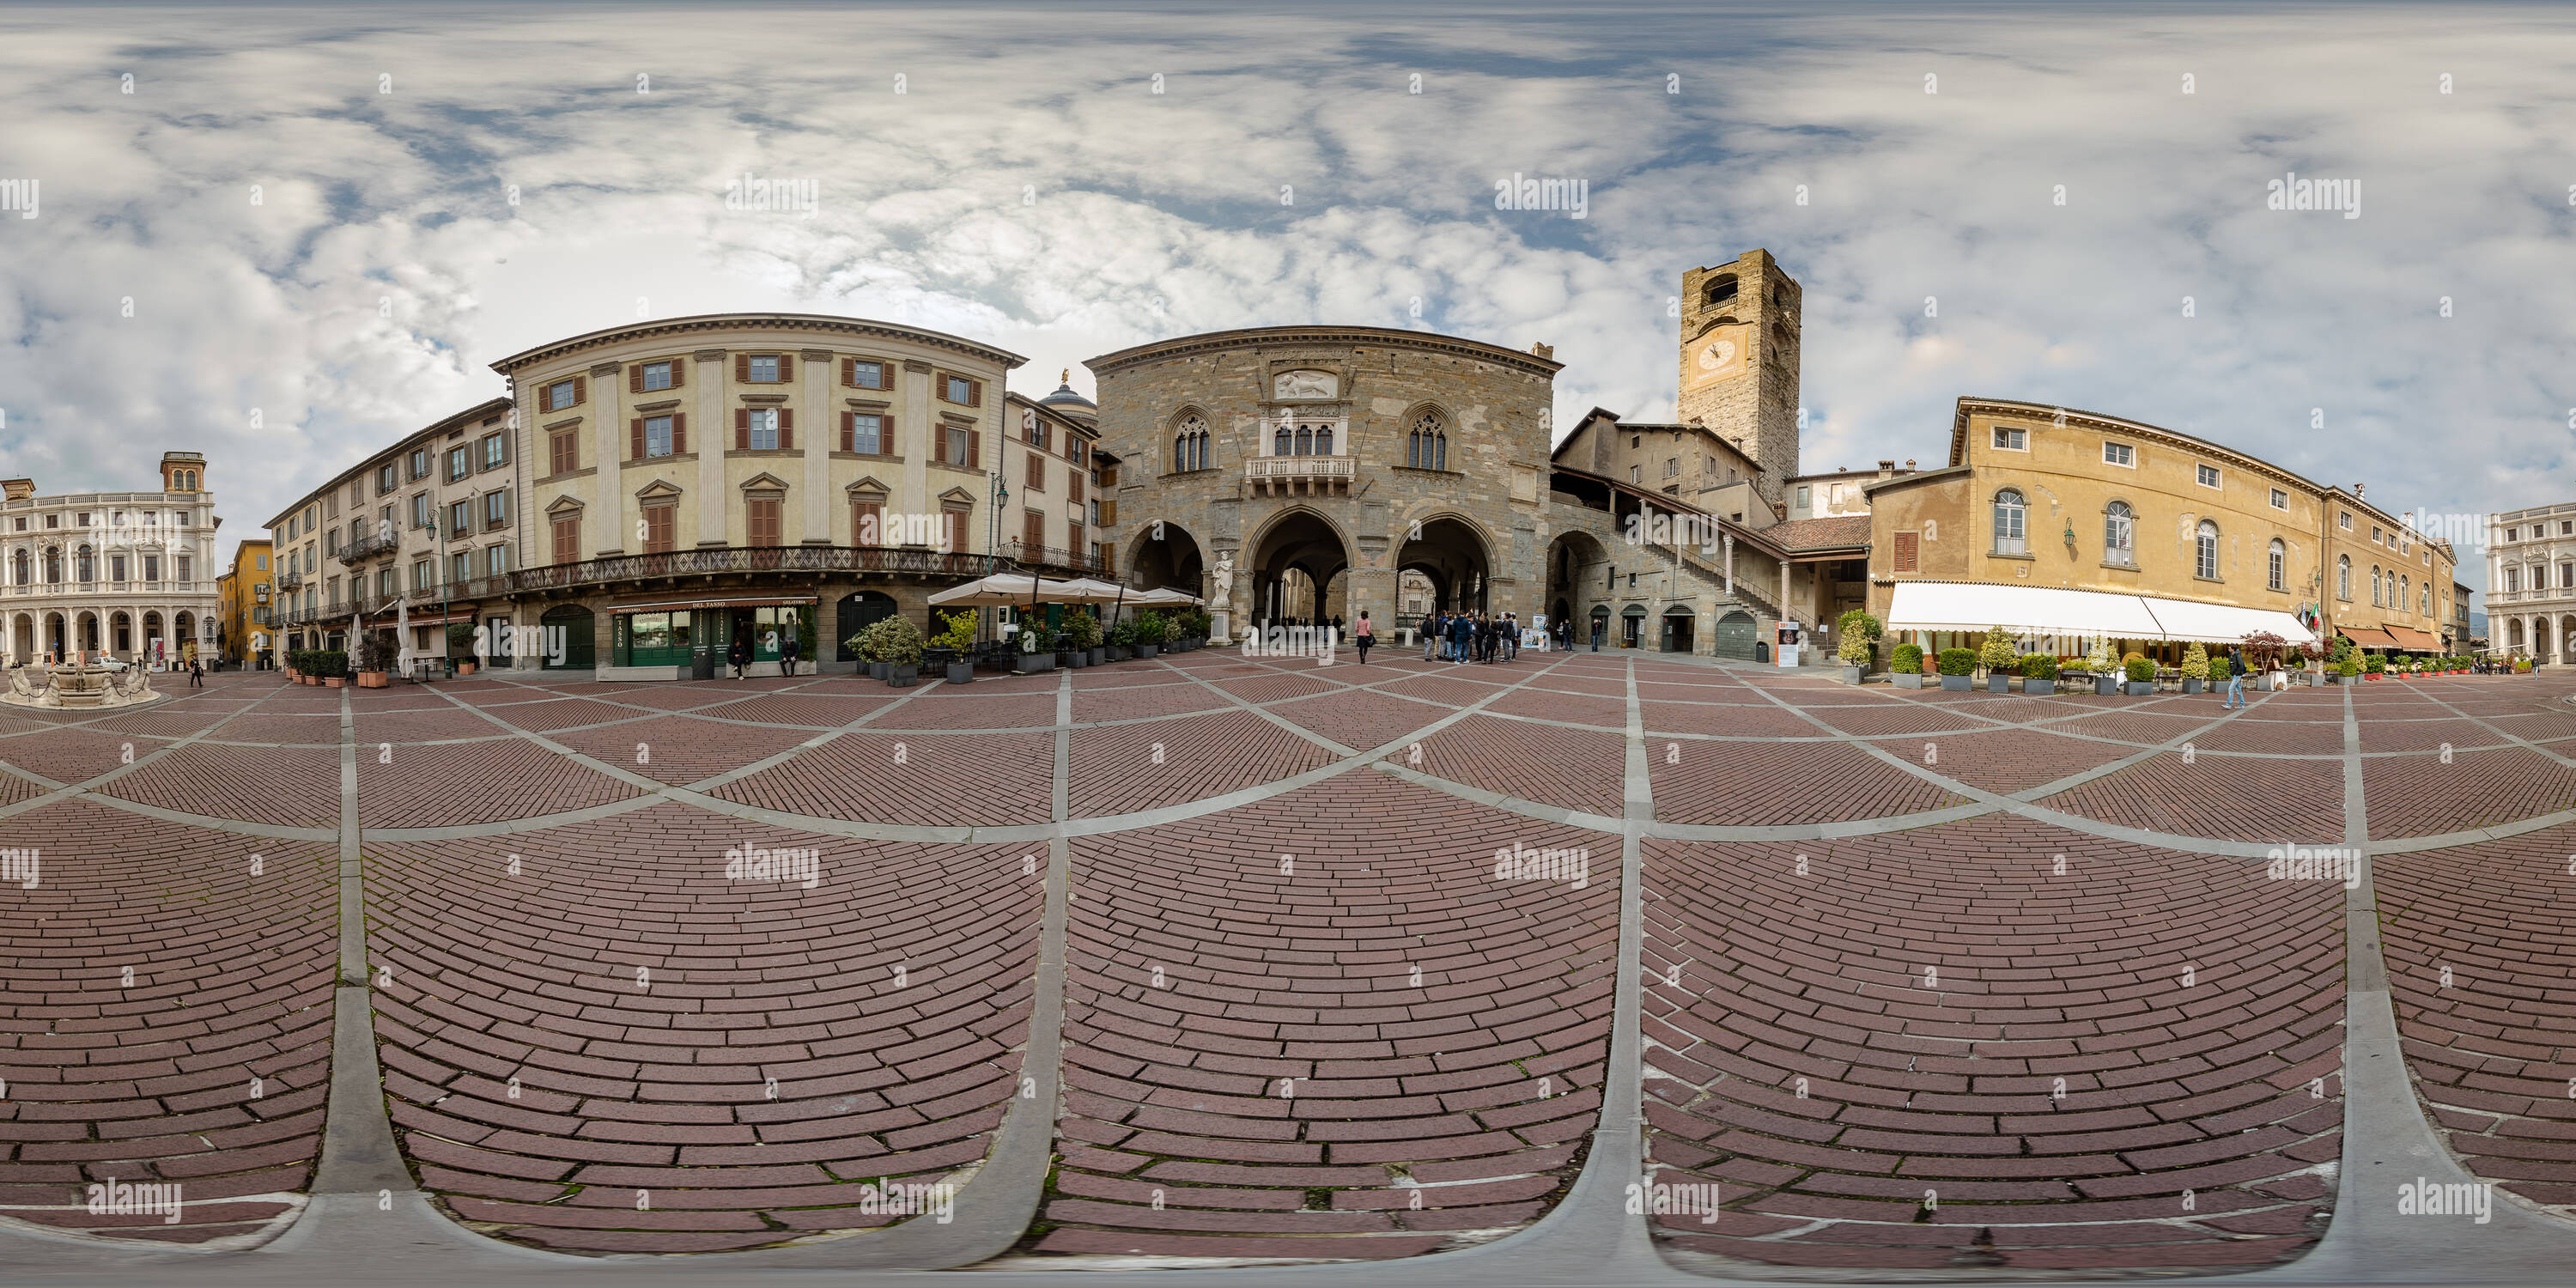 Vista panorámica en 360 grados de Bergamo. La Piazza Vecchia.